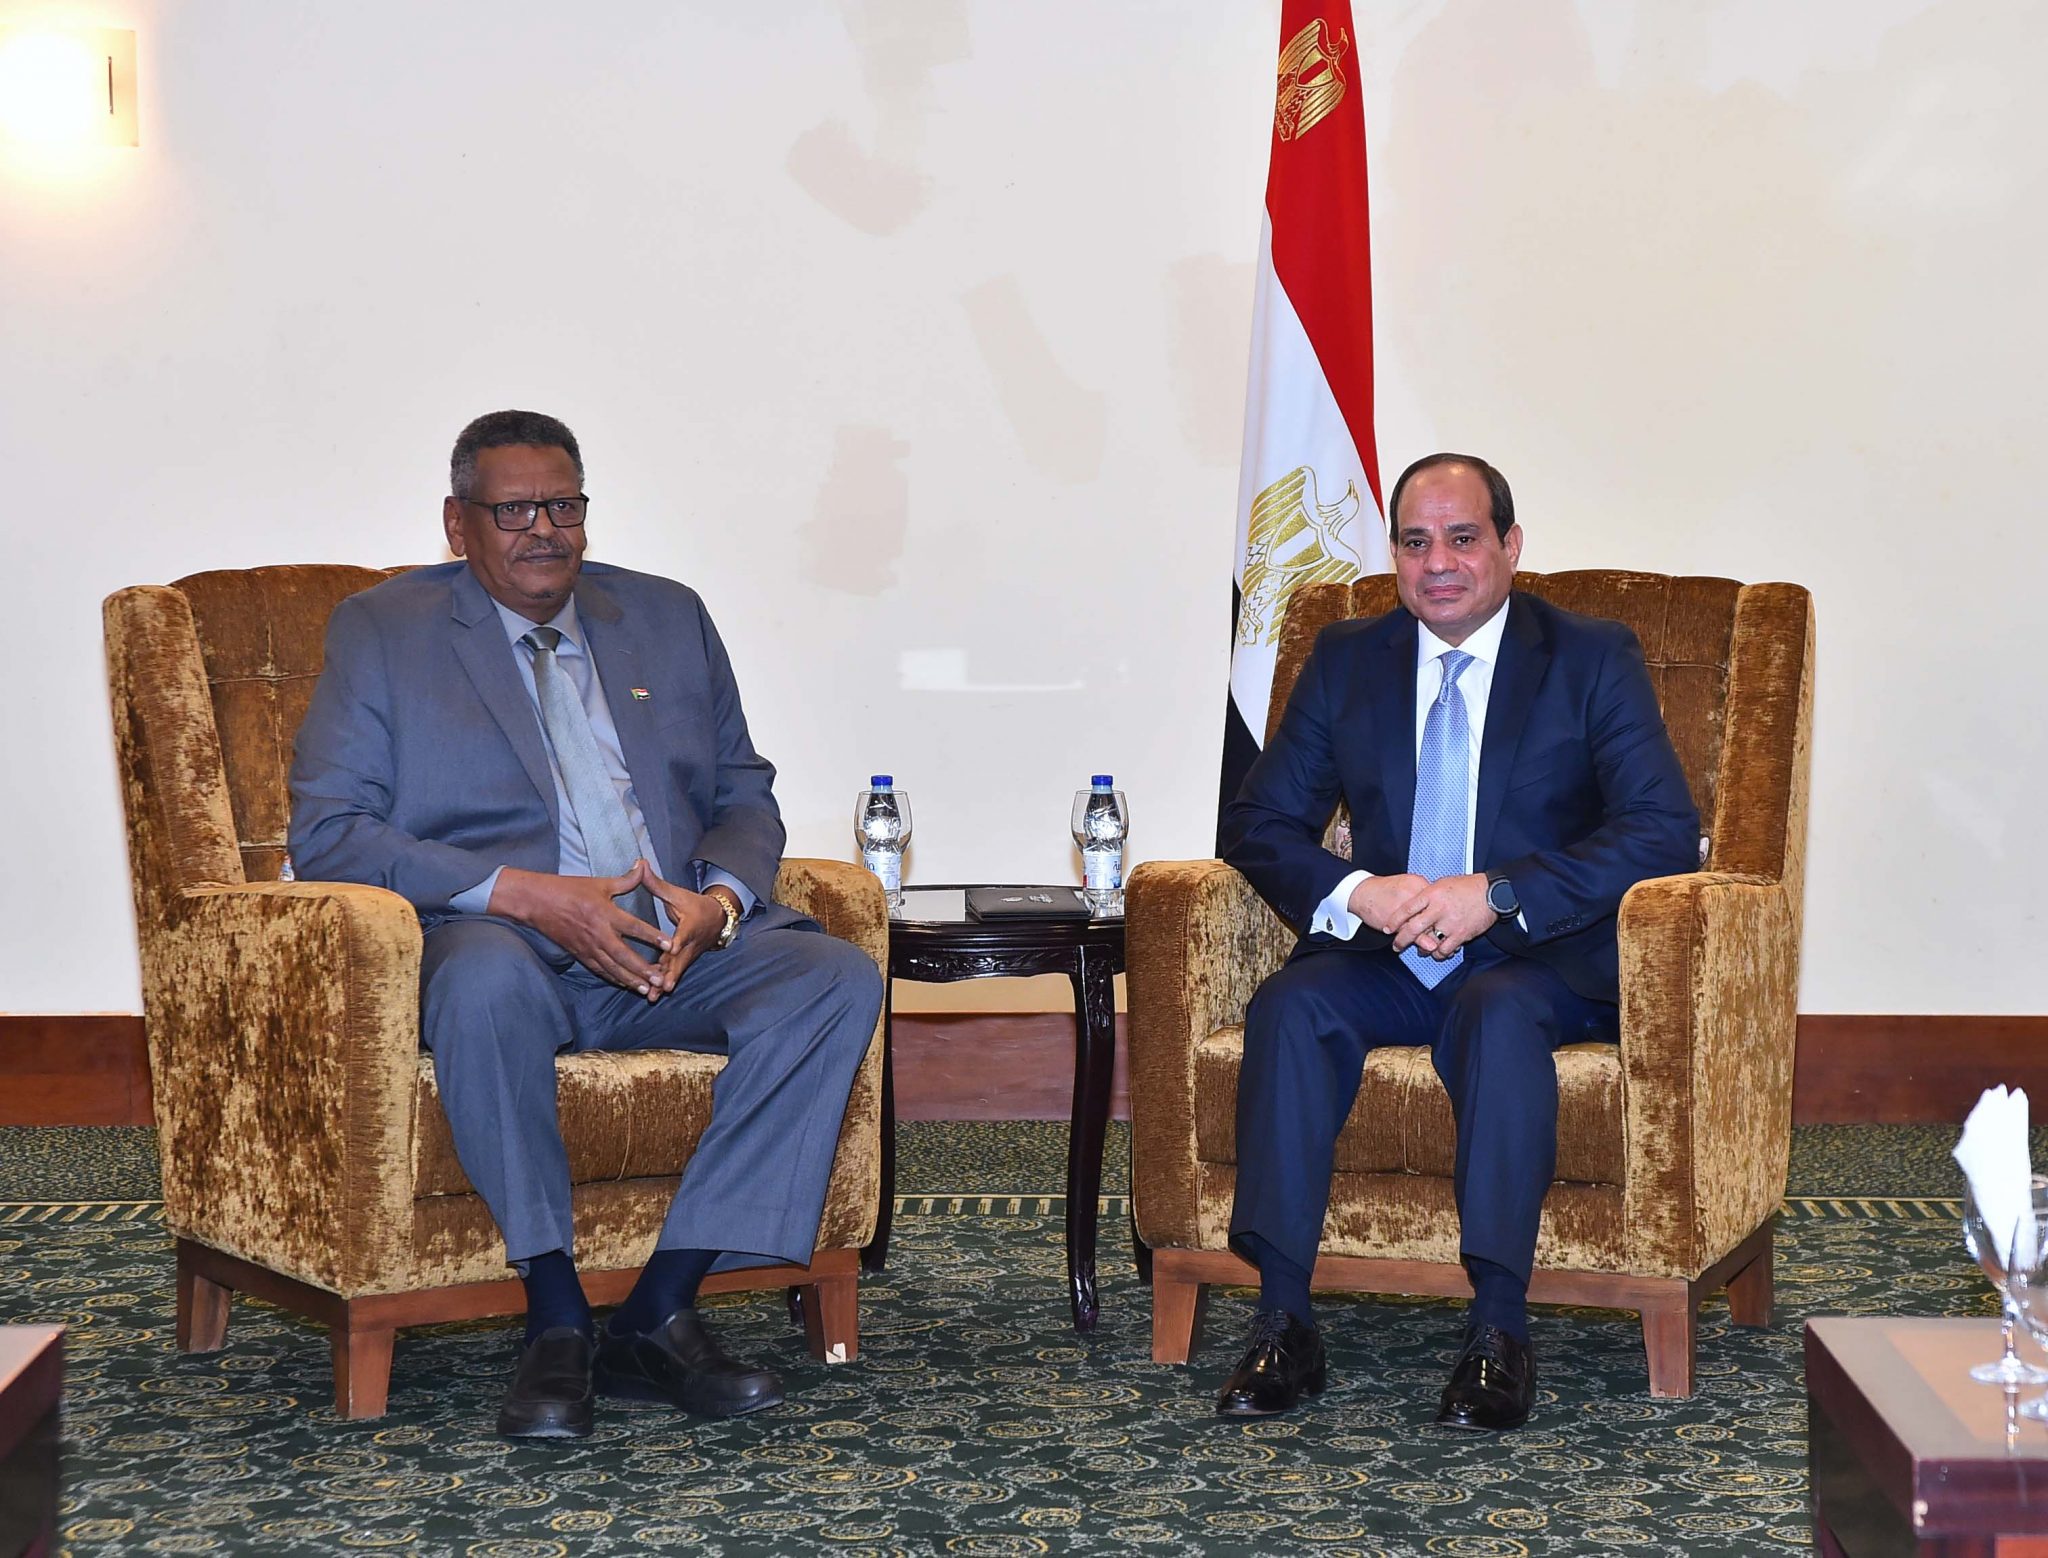   الرئيس يستقبل نائب الرئيس السوداني بمقر إقامة بالخرطوم